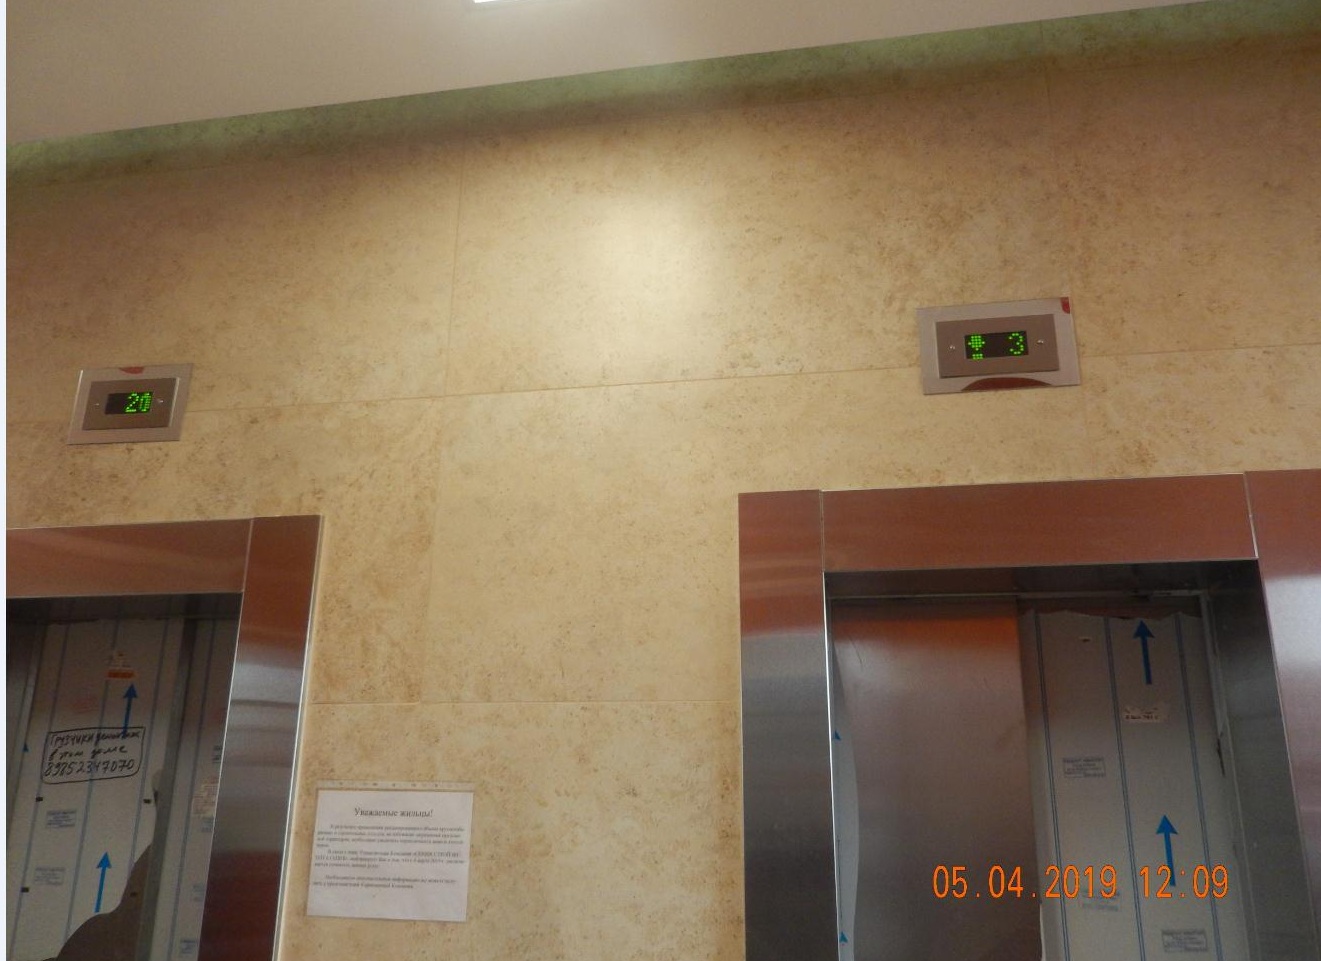 Мосжилинспекция, лифт, 3105 актуалка